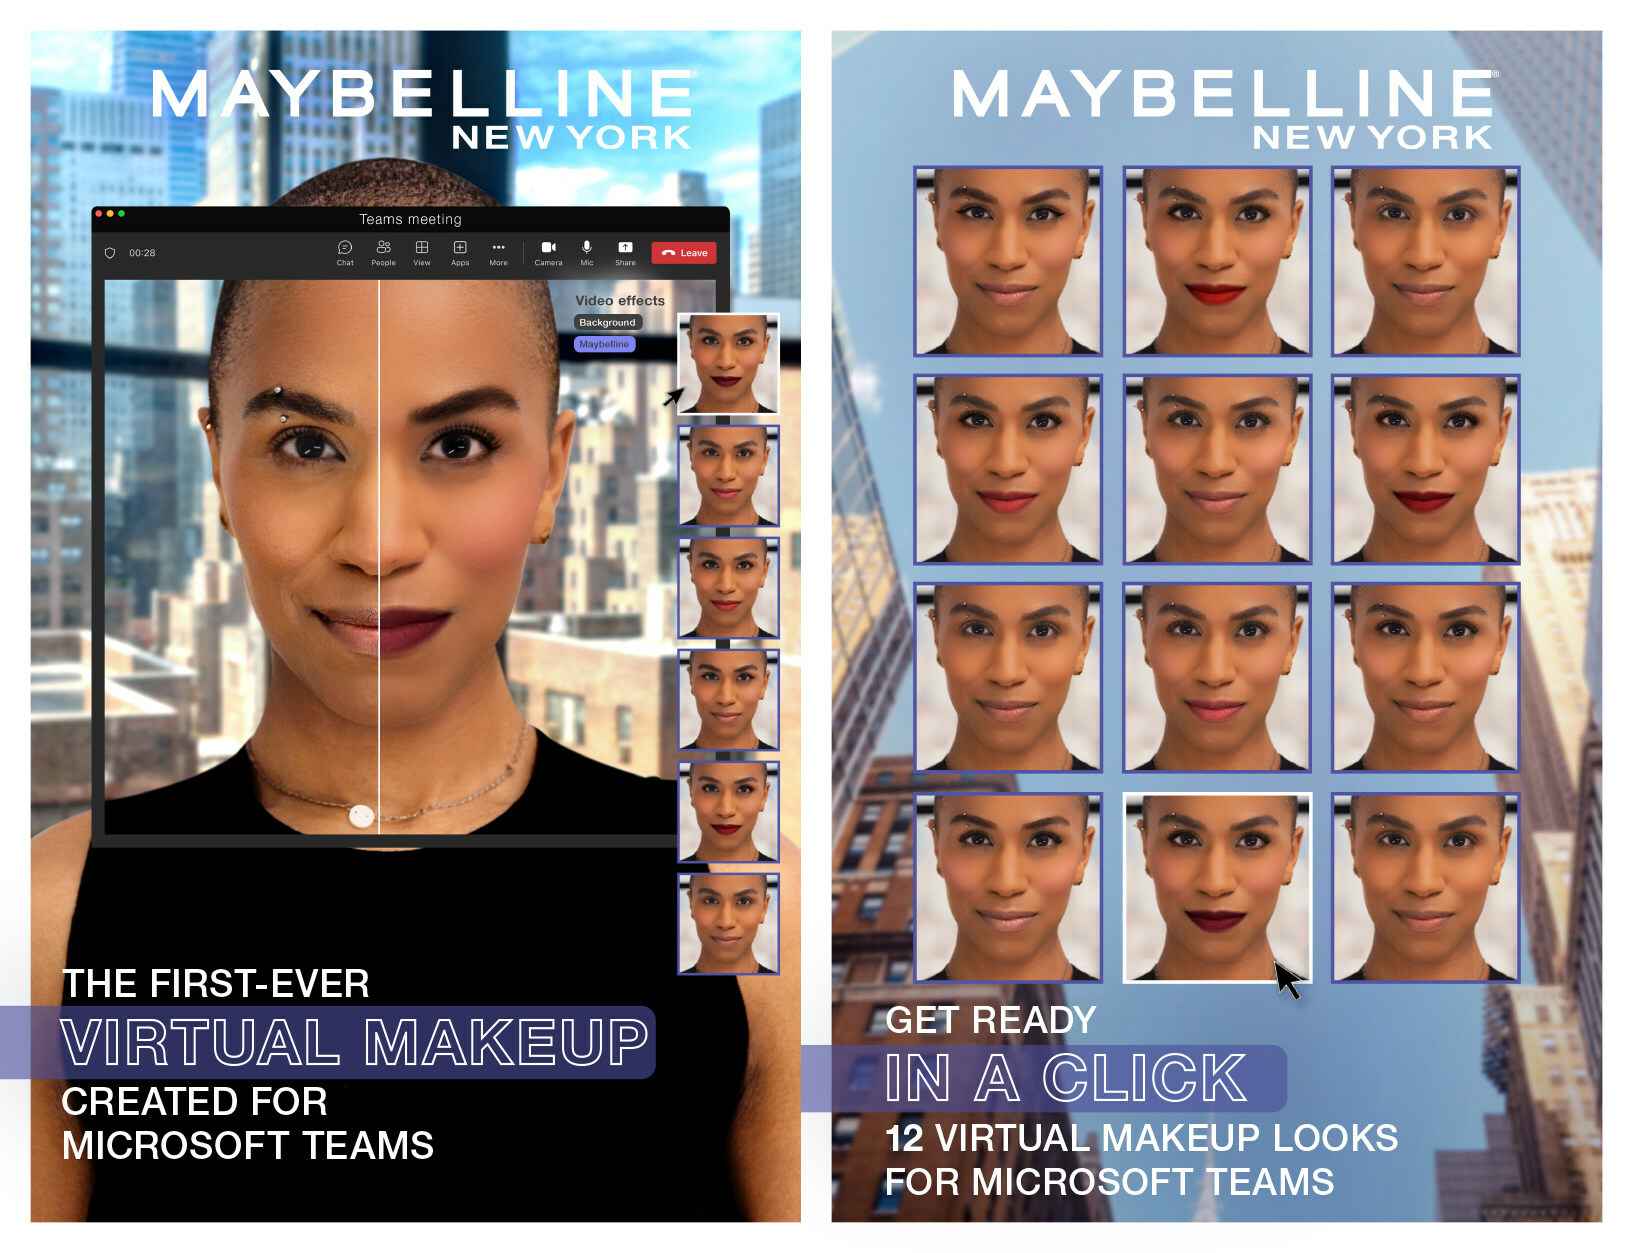 Cartel que anuncia la aplicación en el que se muestran las doce opciones de maquillaje.